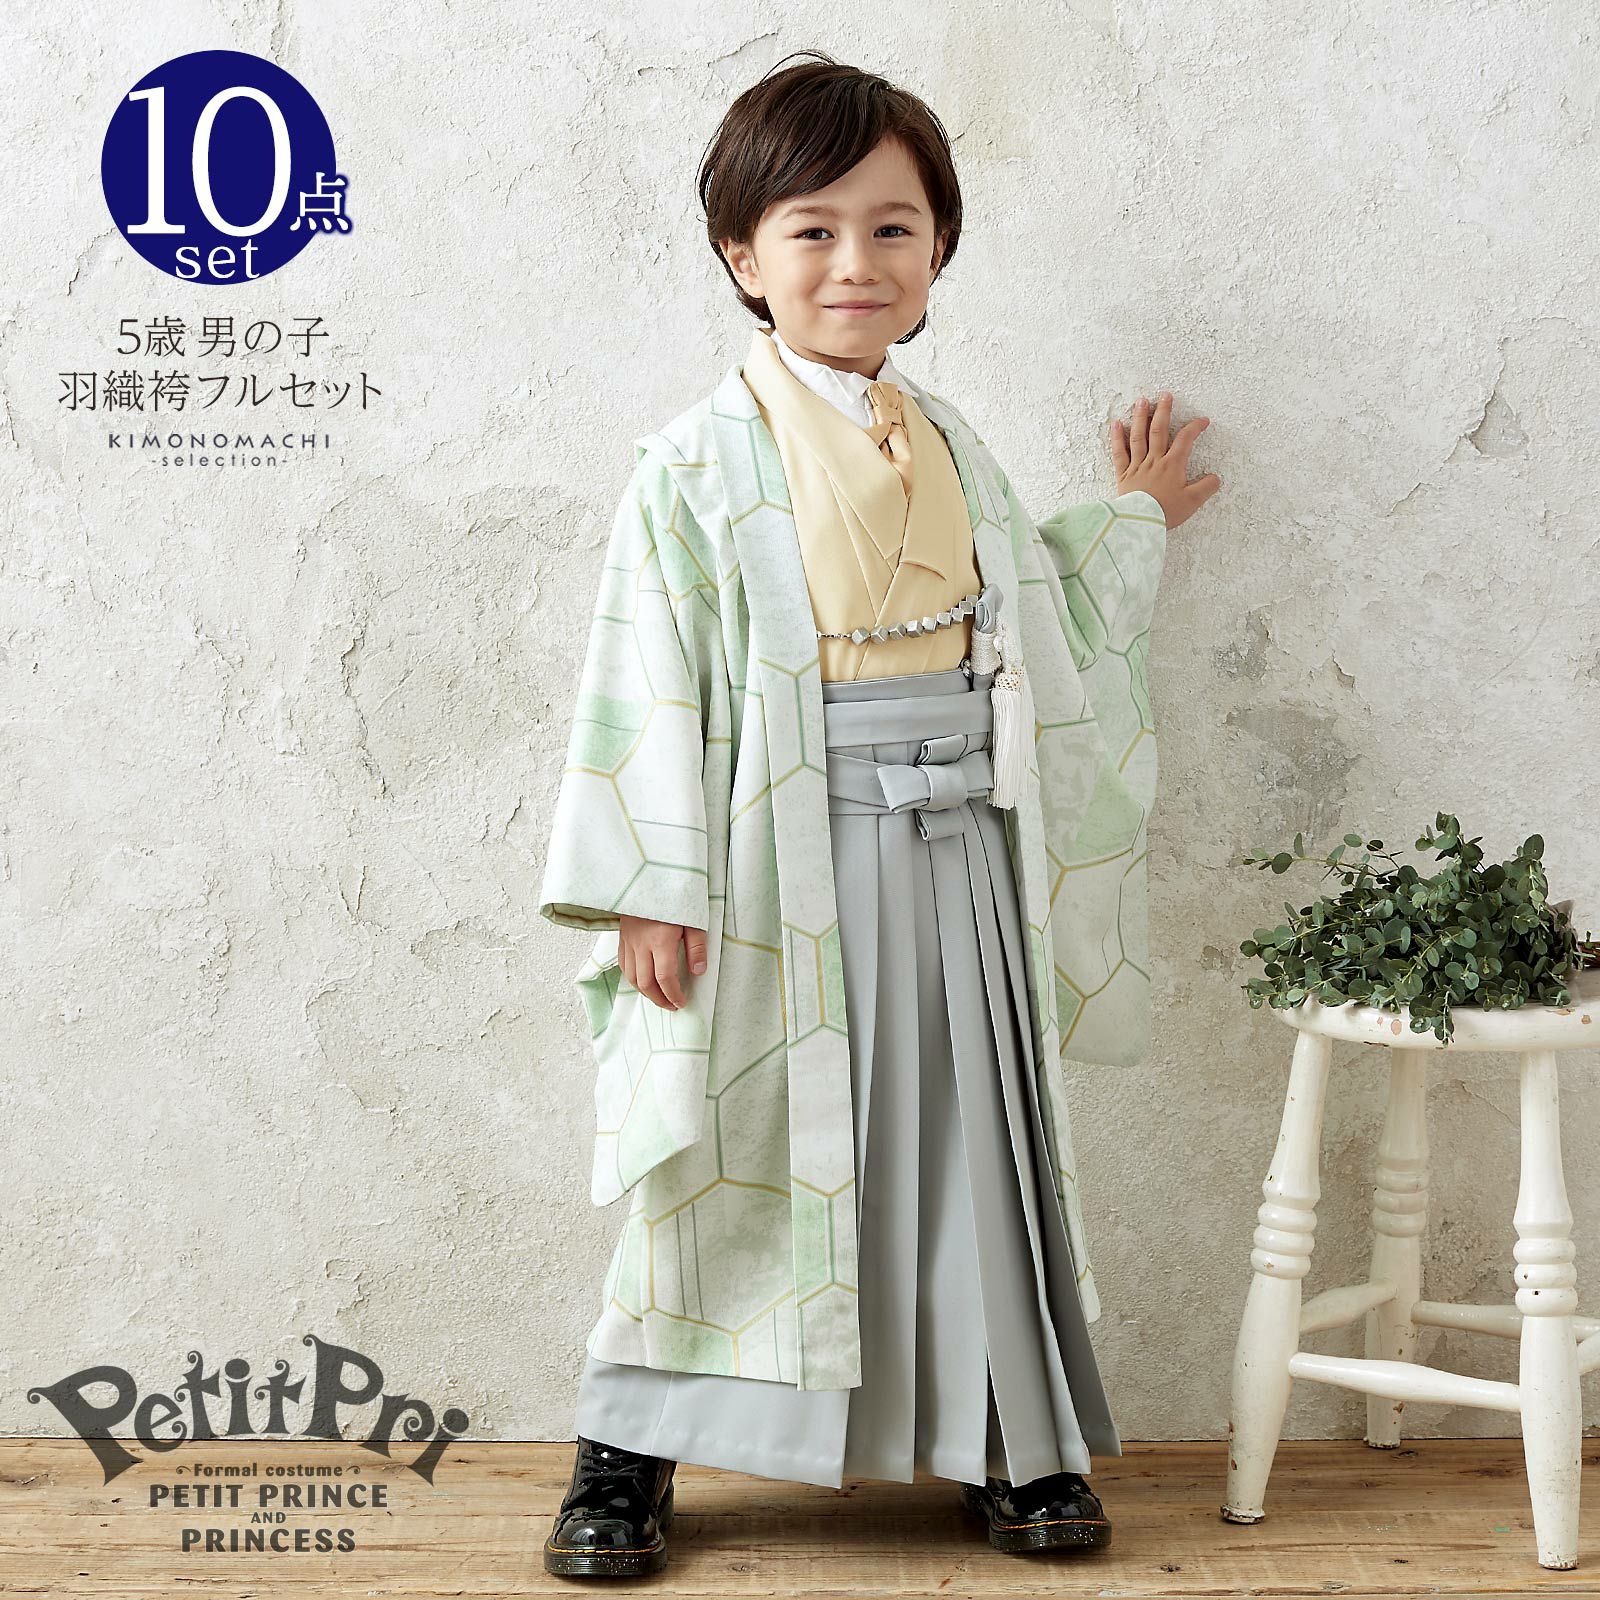 七五三 着物 男の子 5歳 ブランド 羽織袴セット PetitPri ぷちぷり